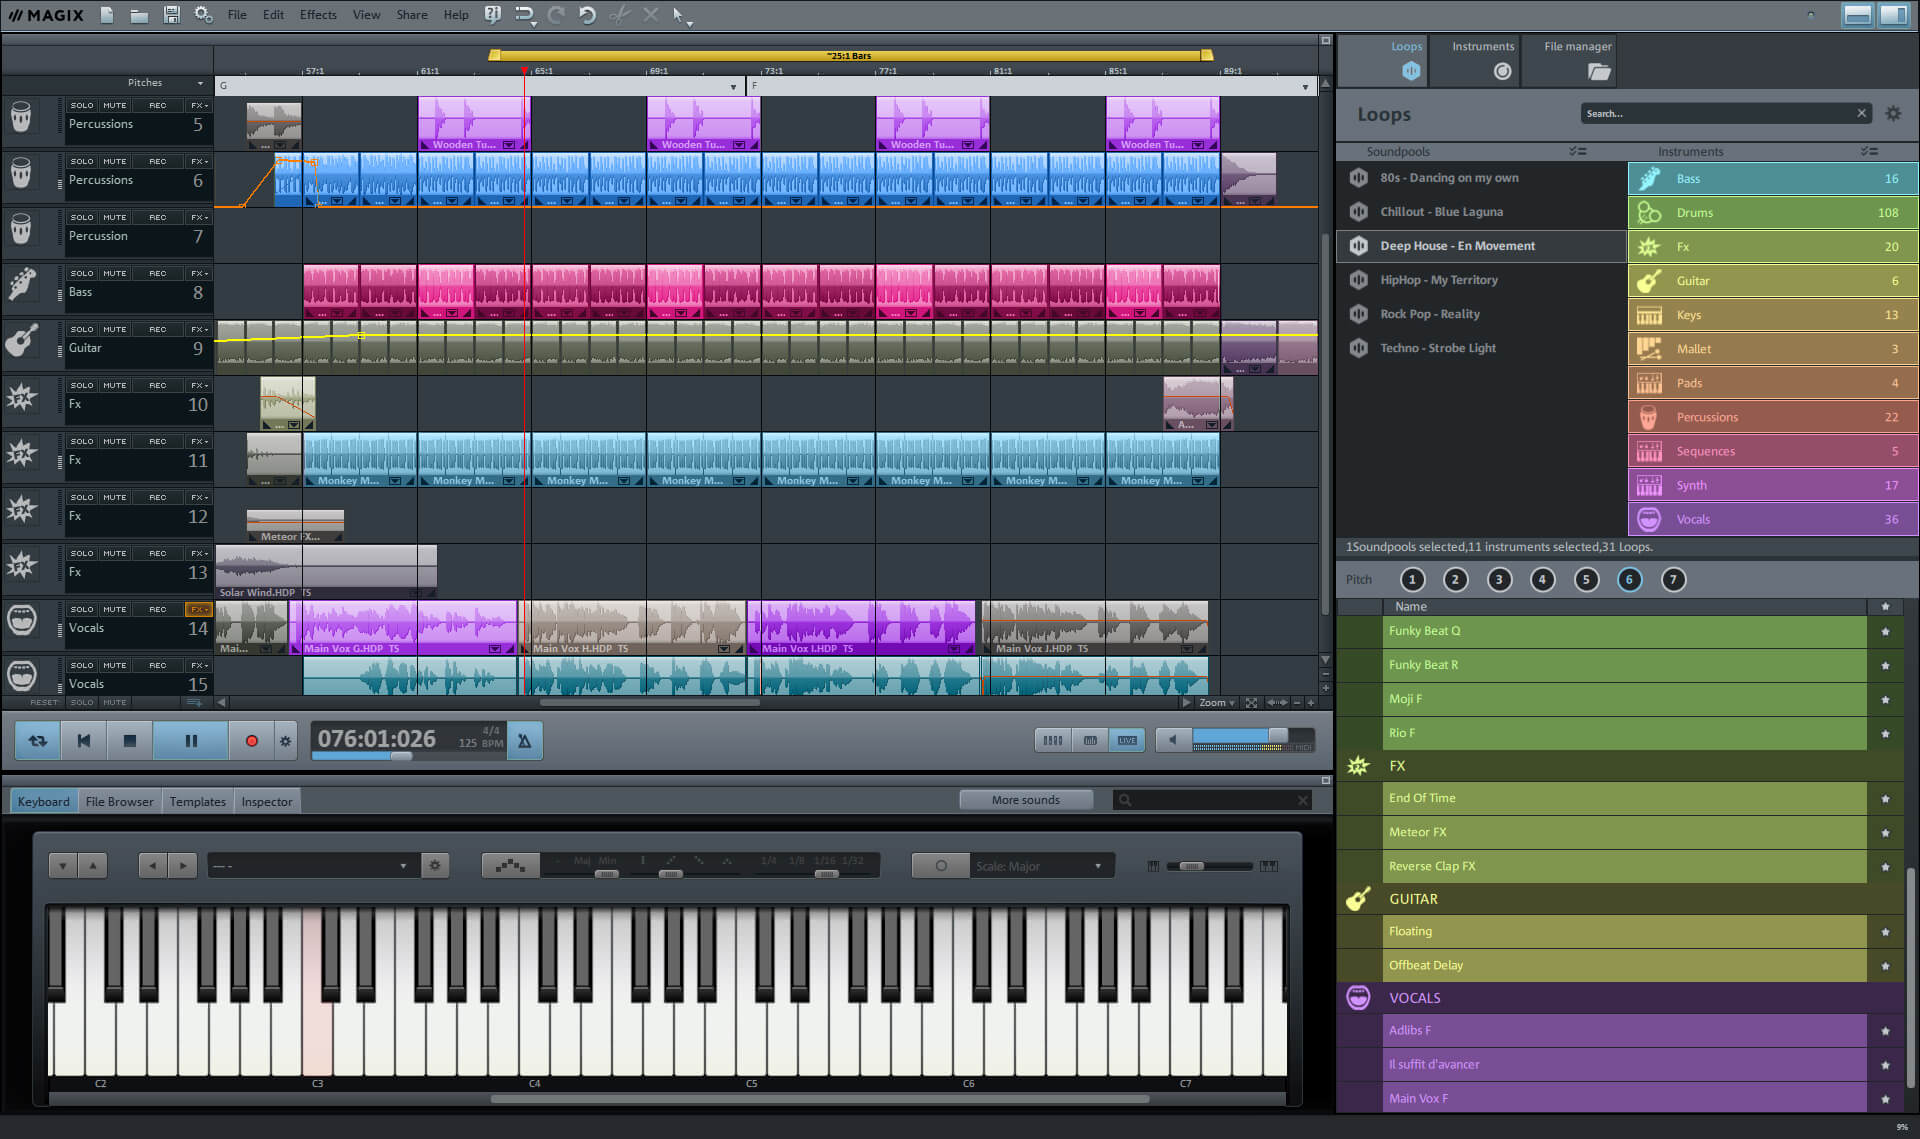 Magix launhces new Music Maker software